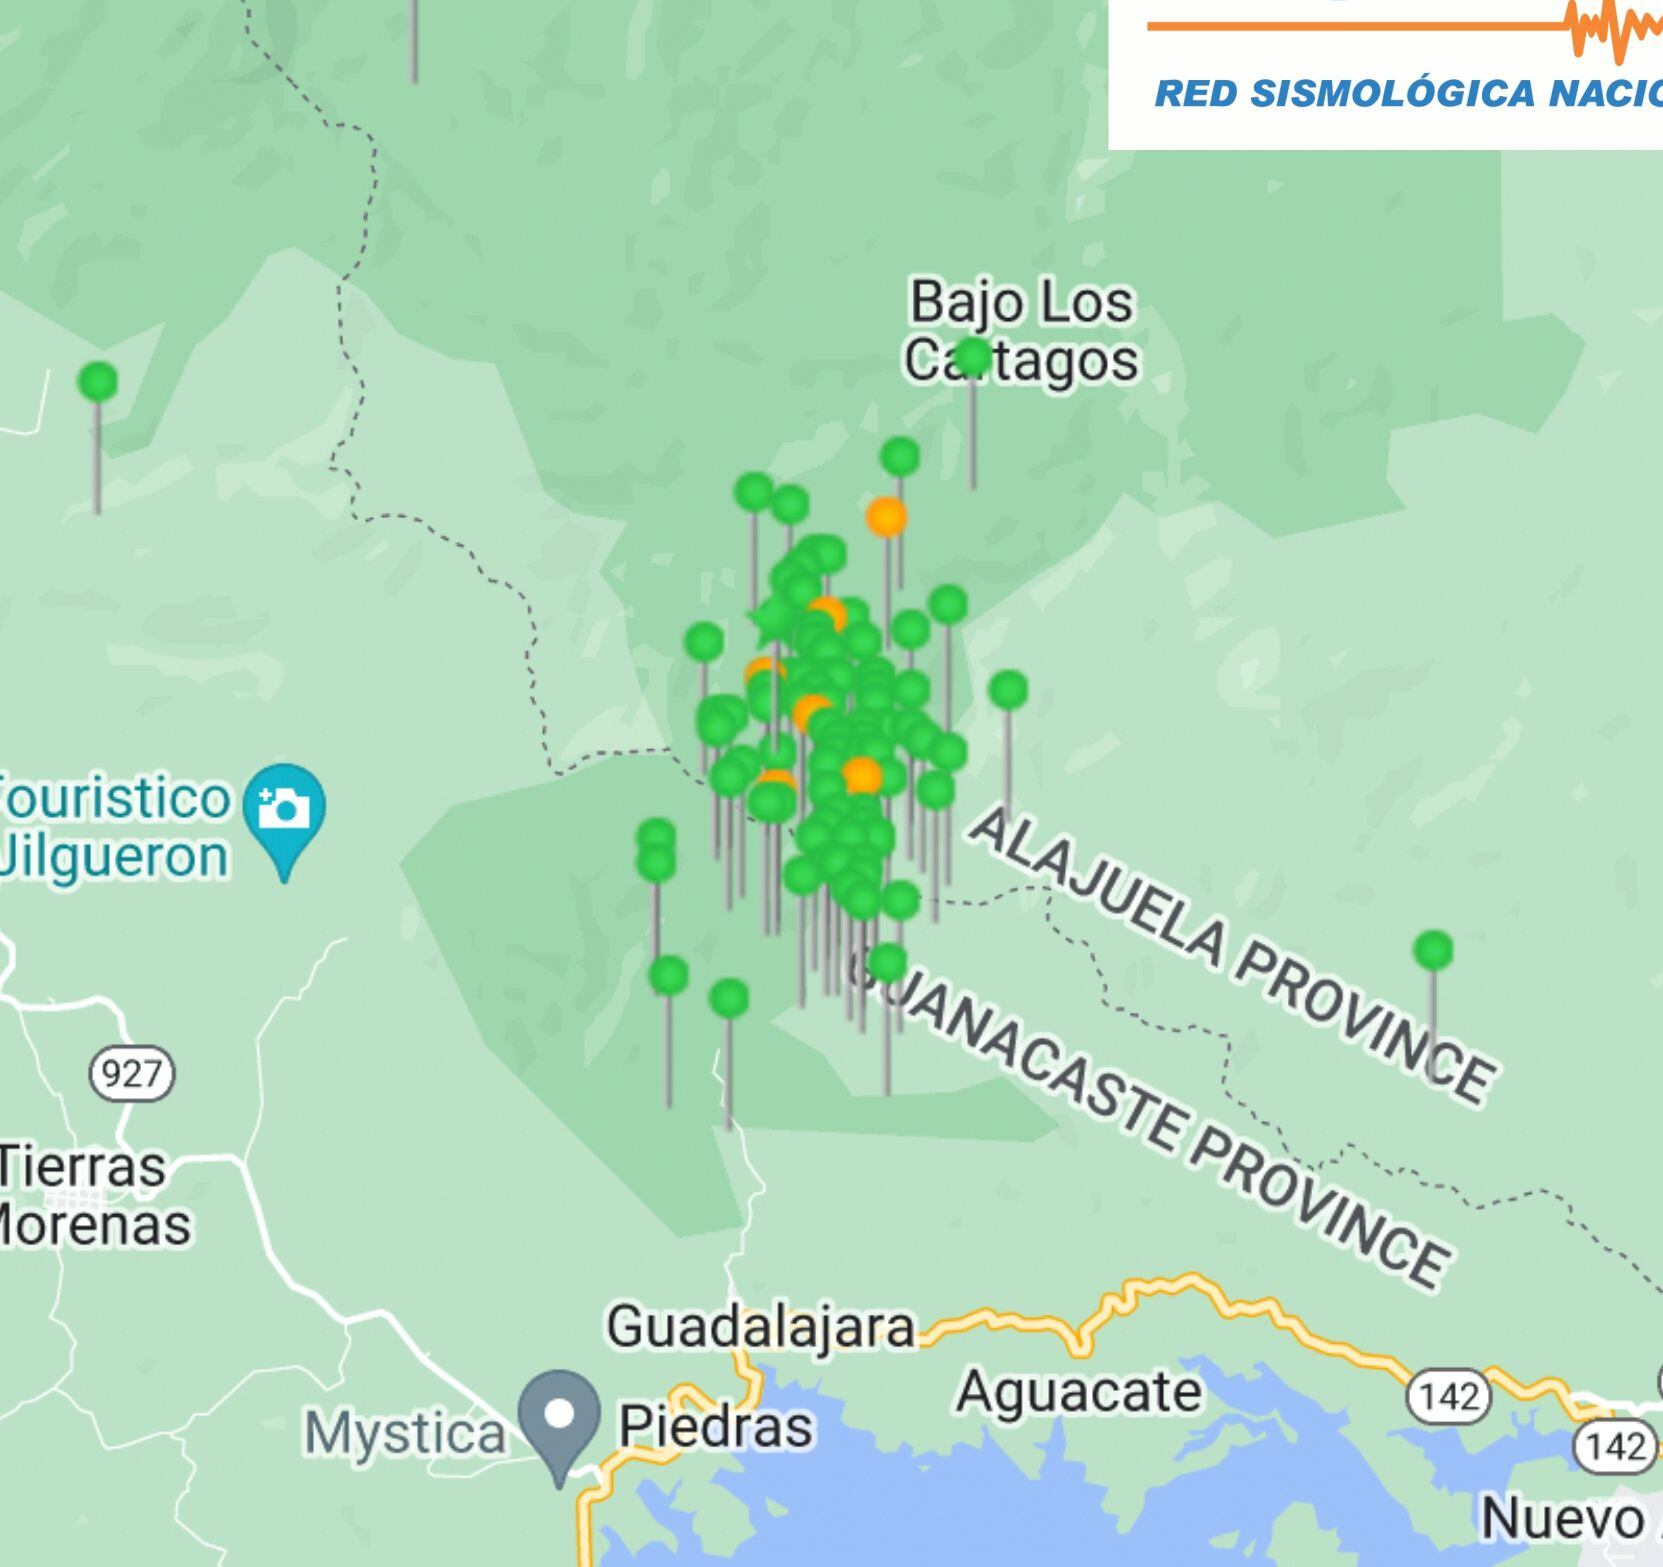 Los temblores se concentran al norte del lago Arenal entre las provincias de Guanacaste y Alajuela. El arco volcánico de Guanacaste tiene potencial para sismos de magnitud 6,7. Imagen: RSN.